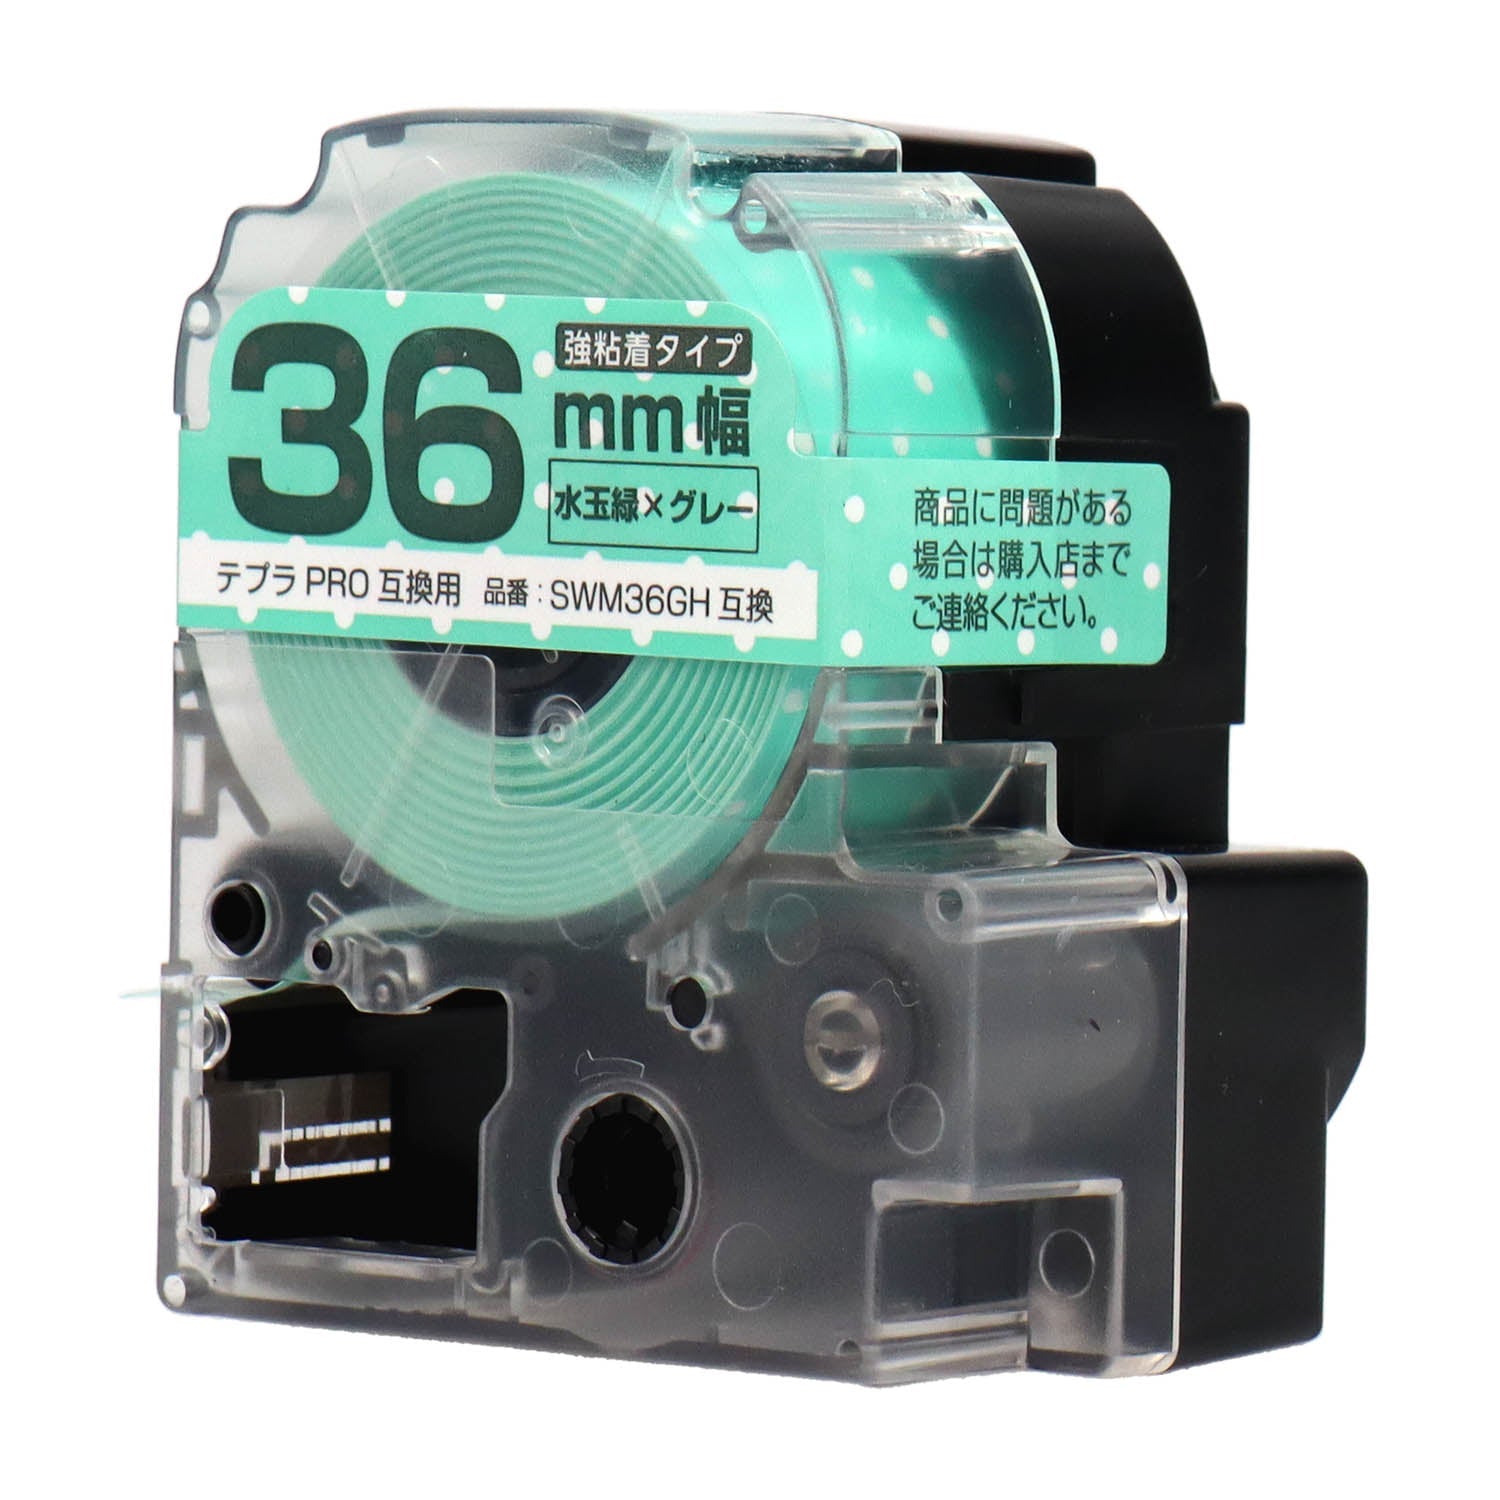 テプラPRO用互換テープカートリッジ 水玉緑×グレー文字 36mm